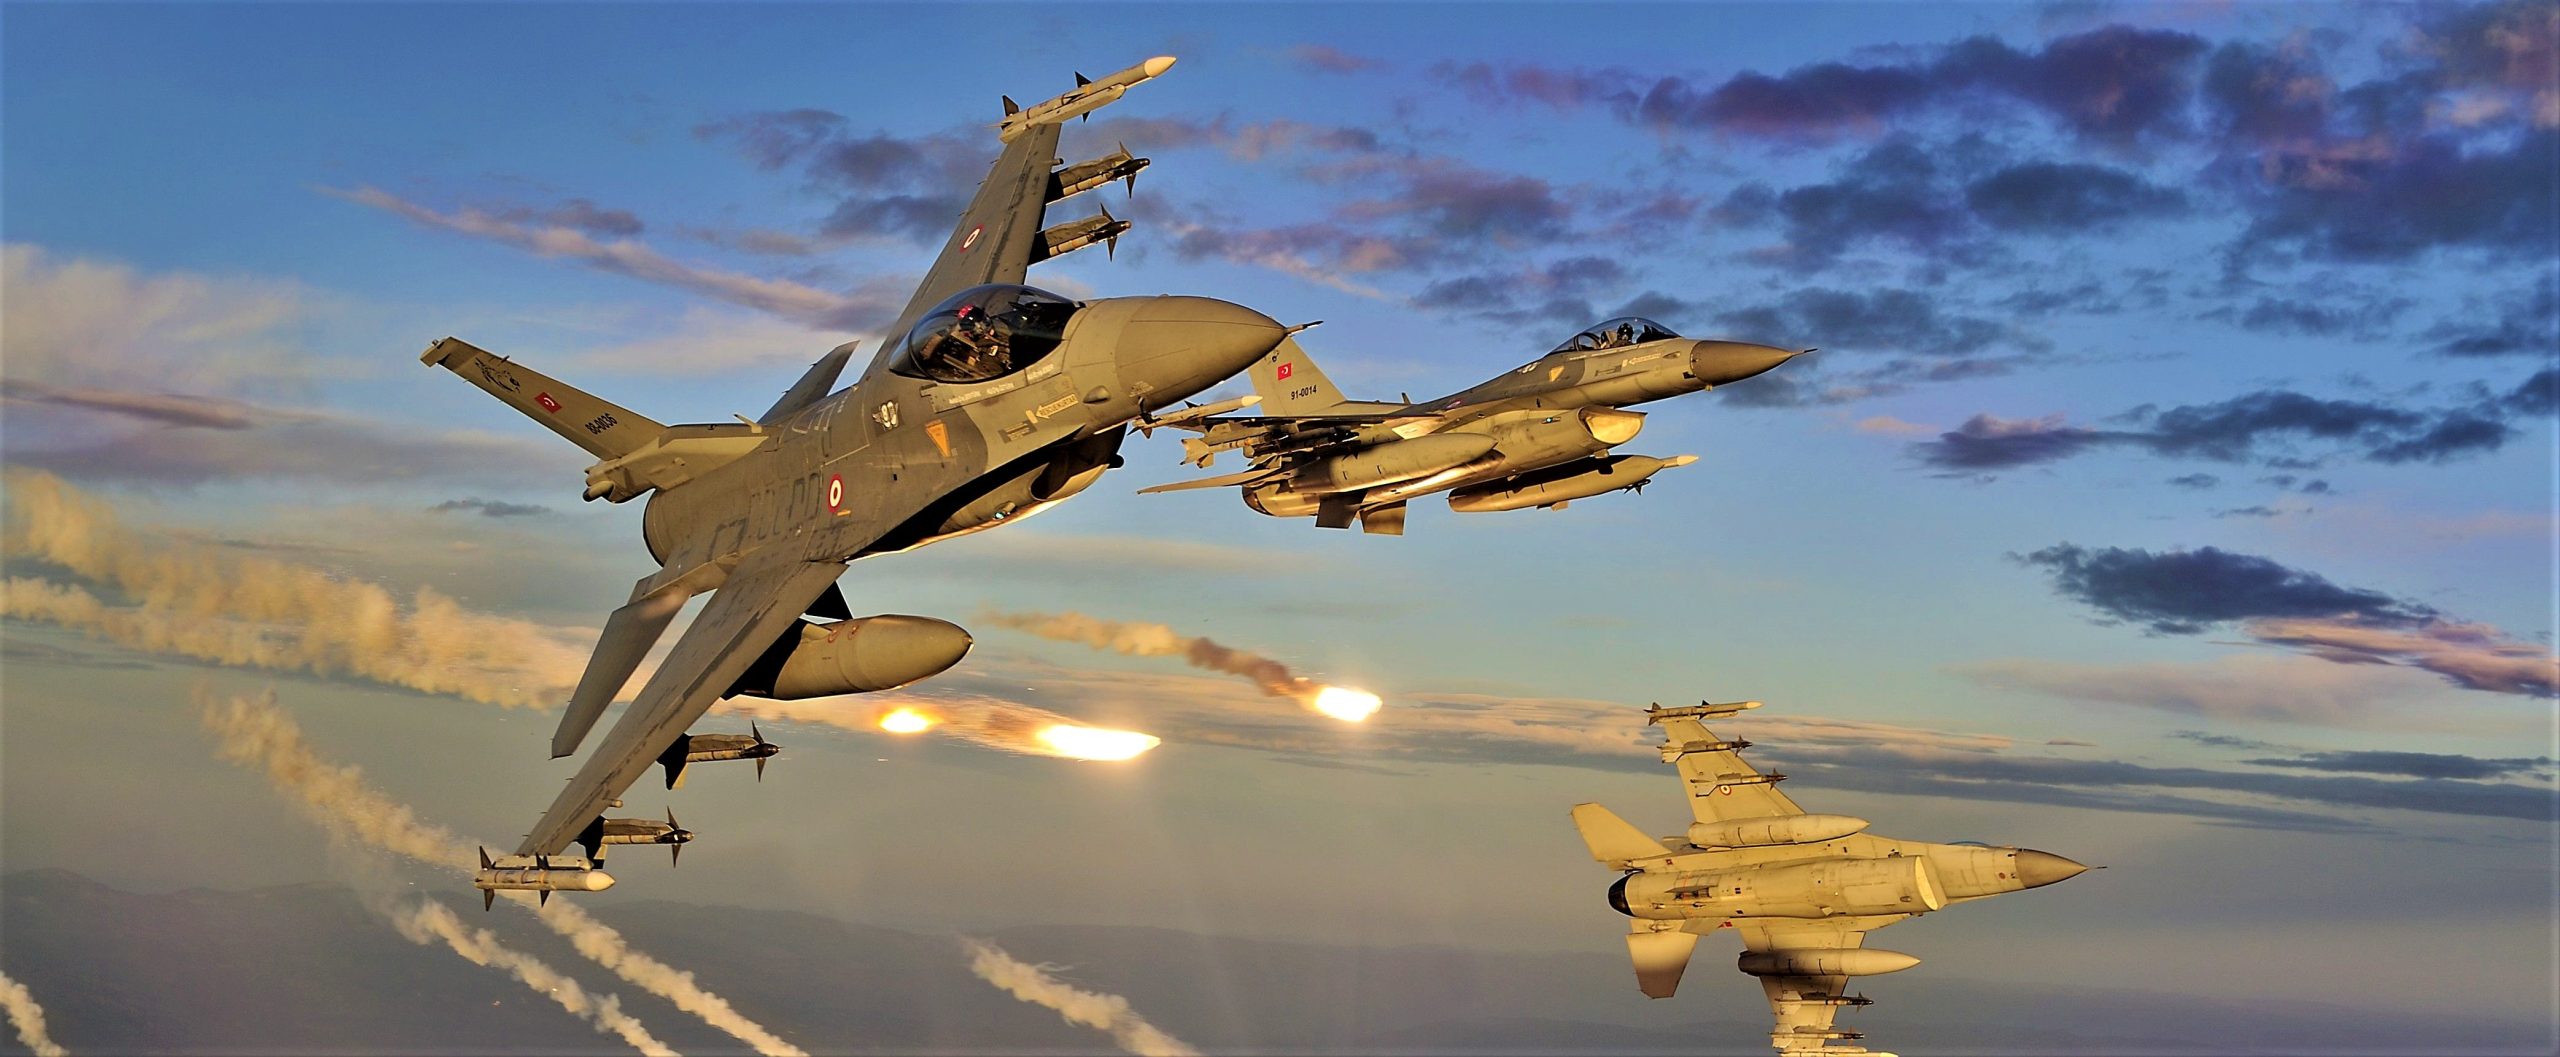 Τουρκικά F-16 πέταξαν πάνω από ελληνικό έδαφος (για ακόμα μια φορά)